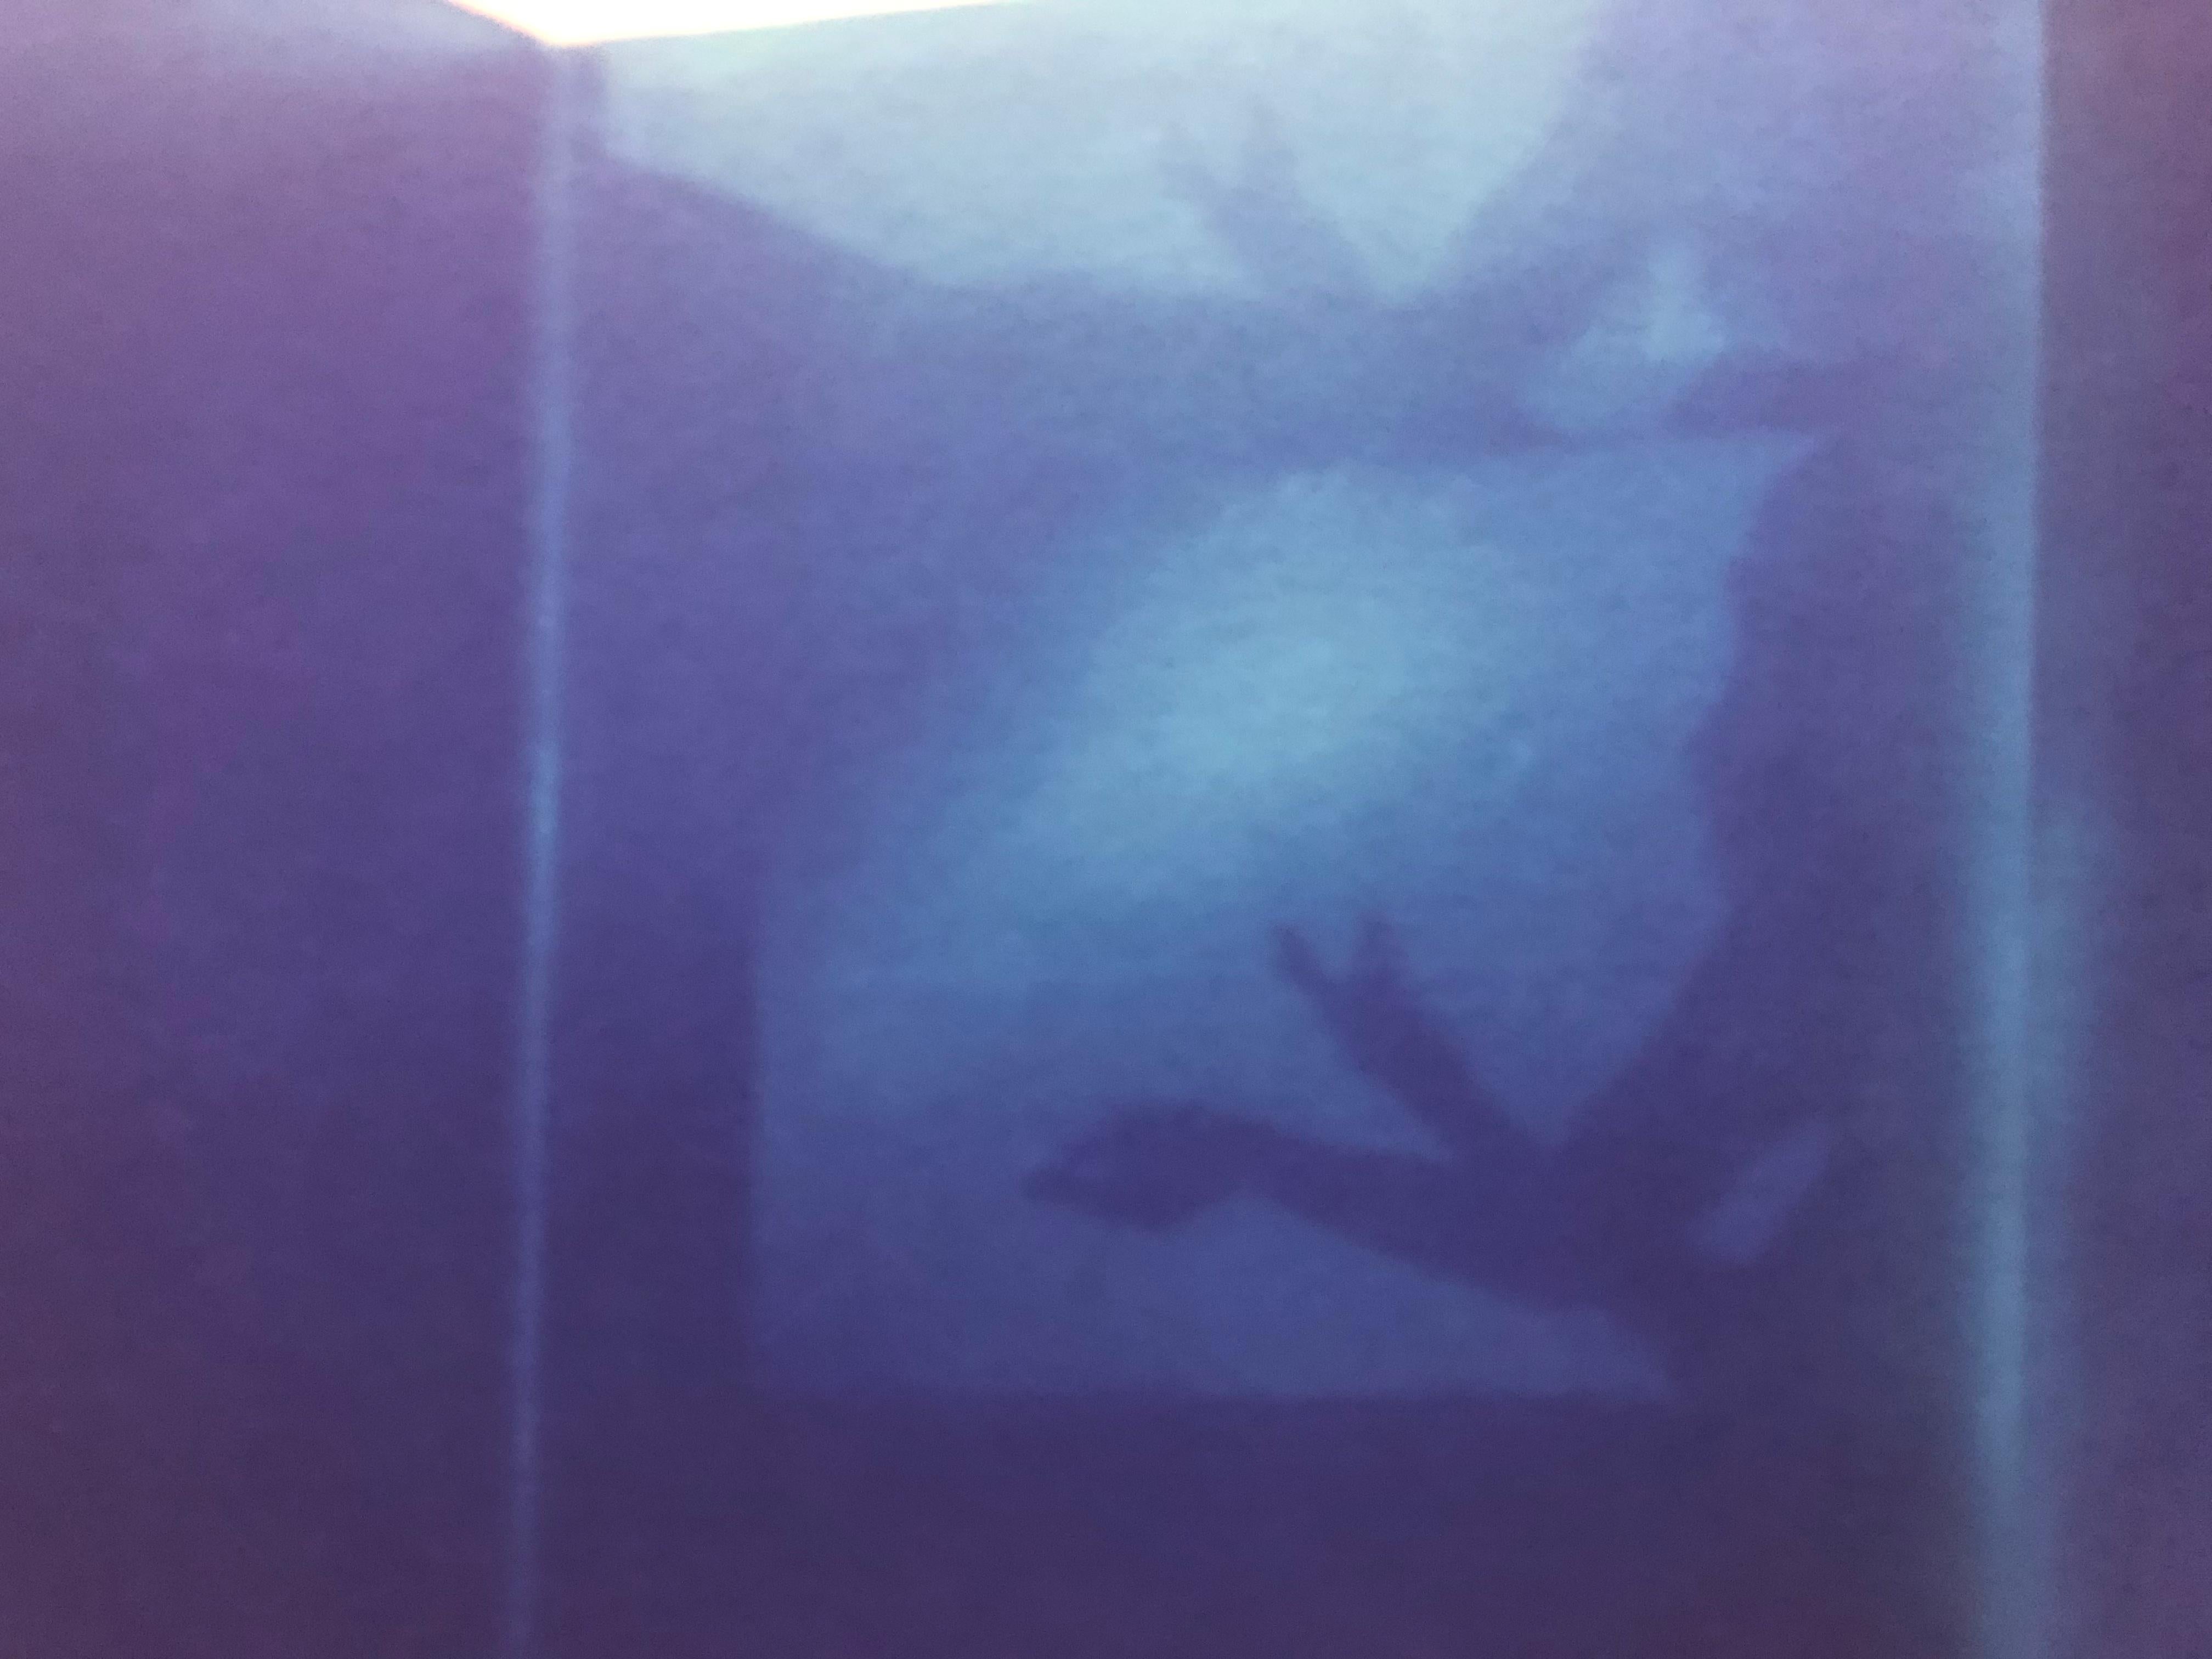 'Schattenspiel', Diptychon - 2016

Wir haben den Raum mit einem tiefblauen Meer über dem Mintgrün gestrichen und die Jalousien geöffnet, damit die Sonne in Wellen über die Wände fluten kann. Wir haben es mit Licht ausgestattet.'

20x48cm, 
Auflage: